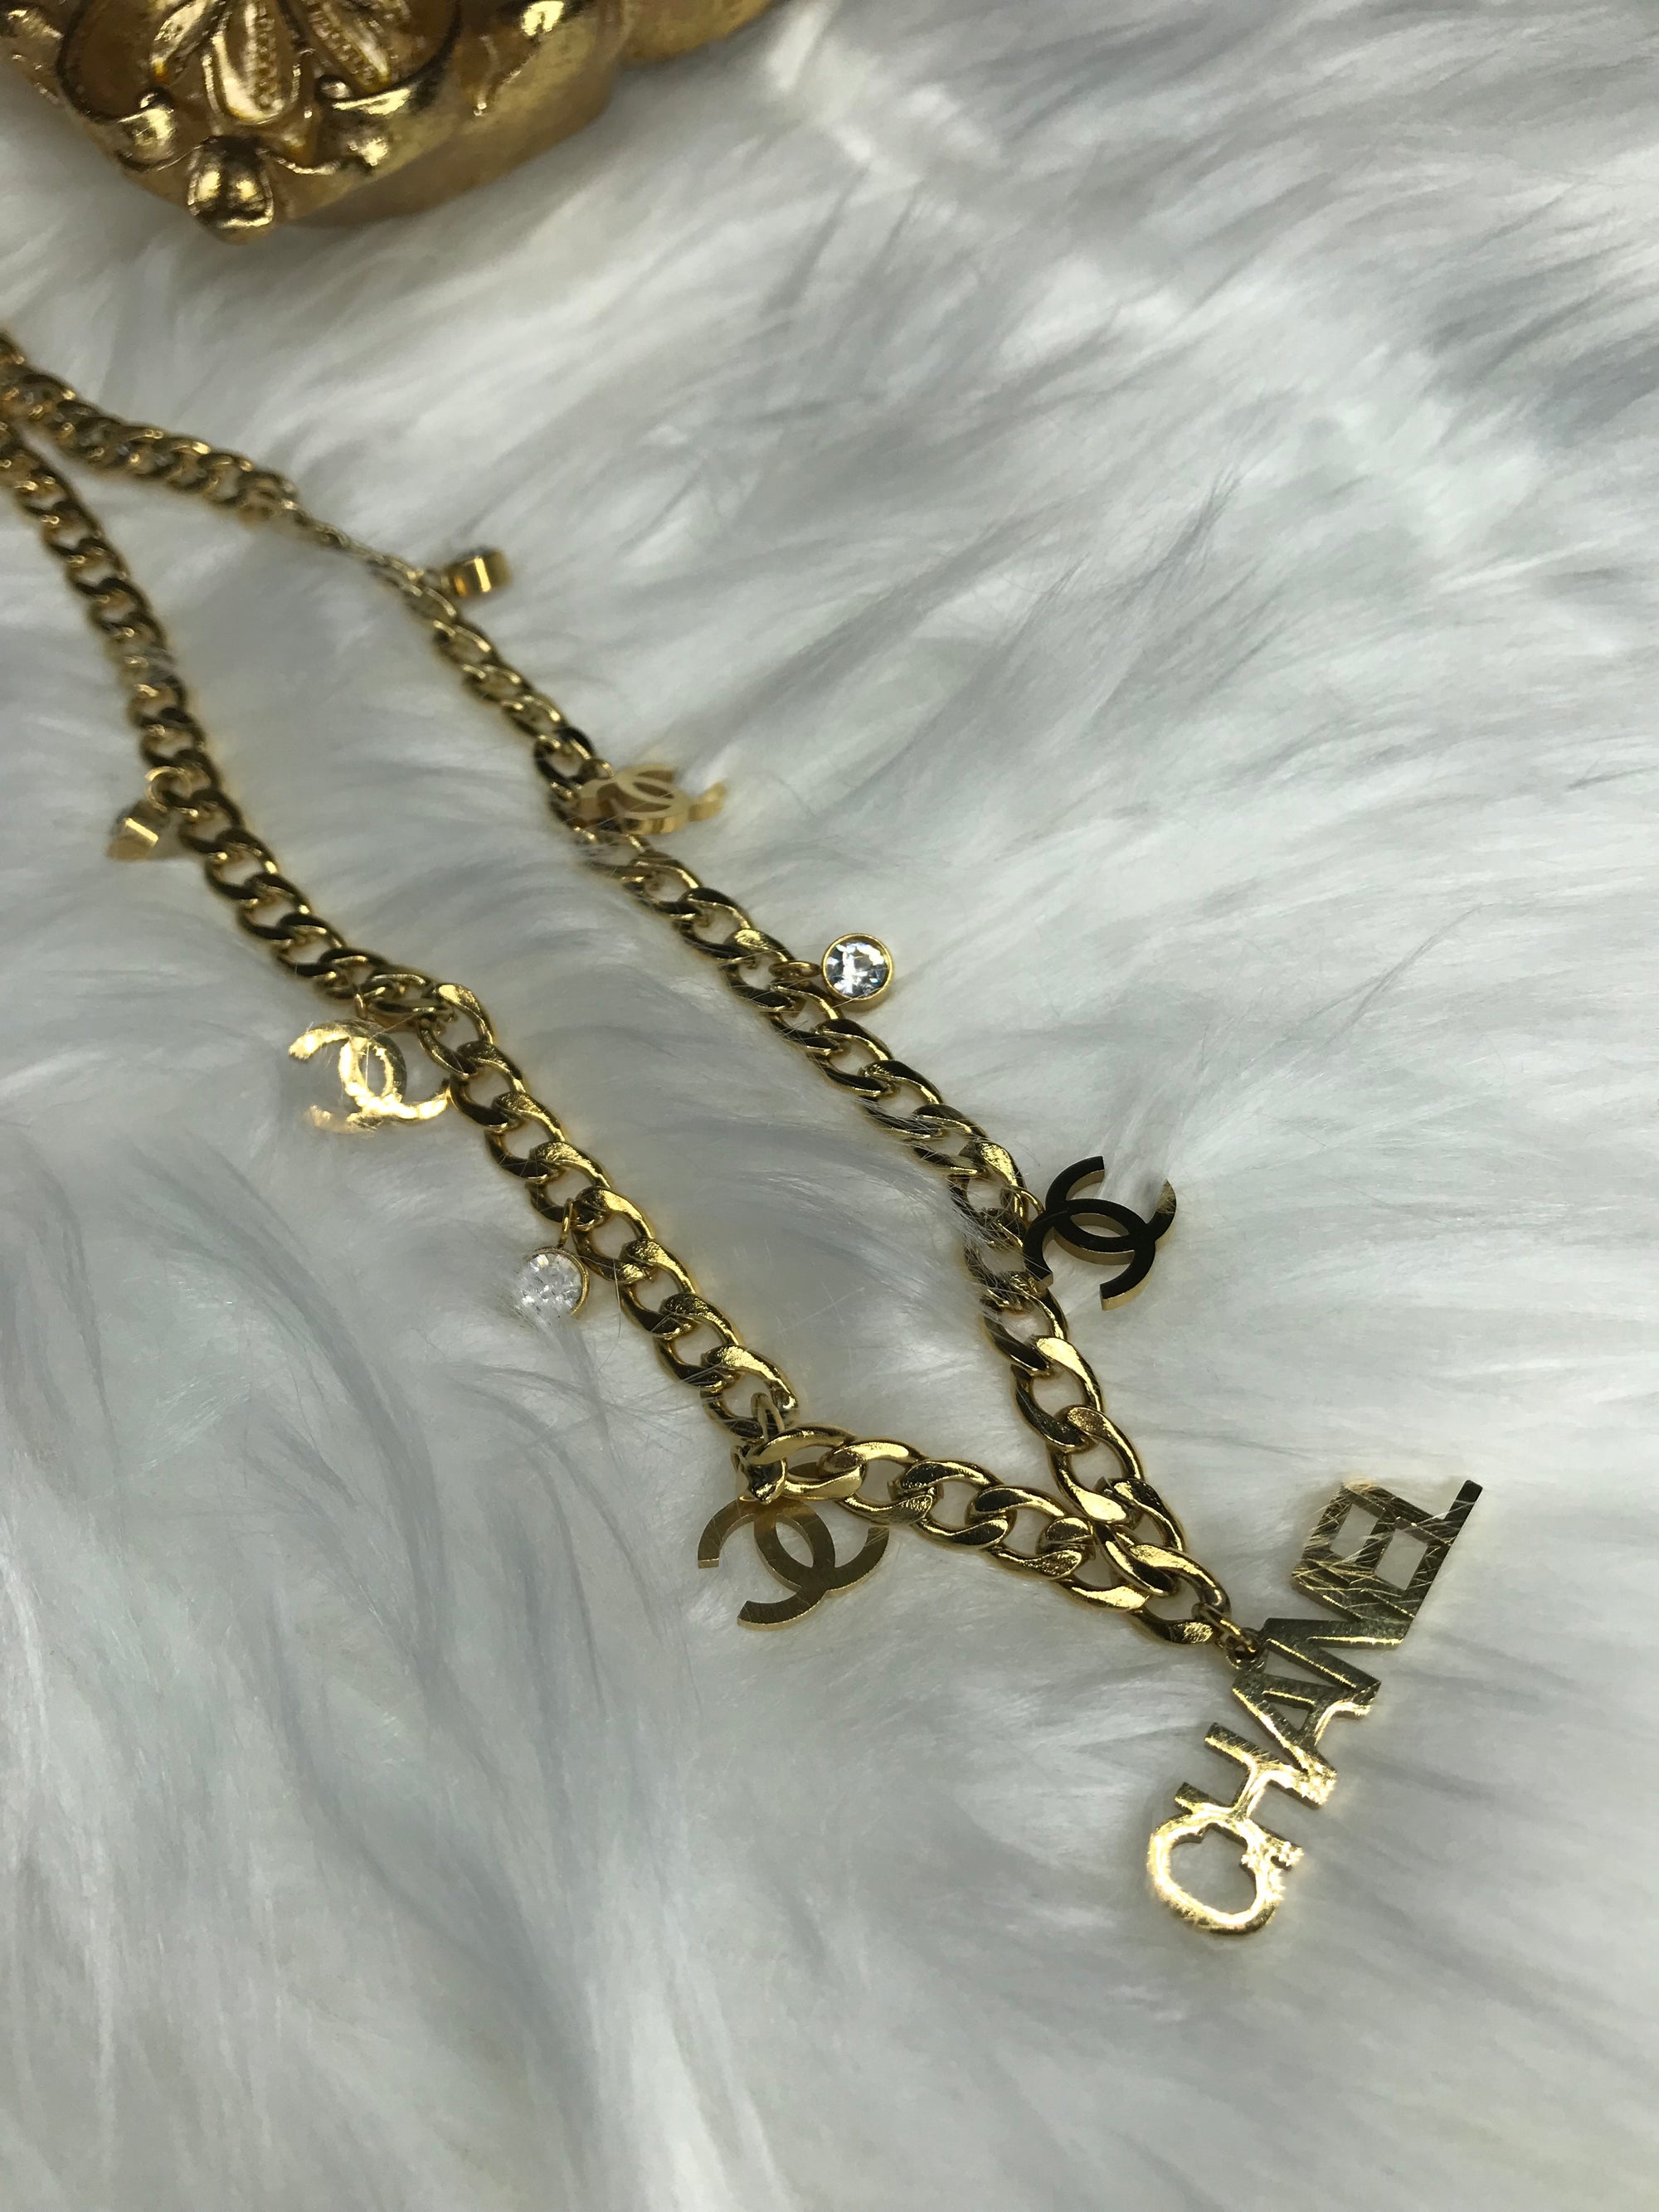 Vintage Chanel Jewelry  Vintage chanel jewelry, Chanel jewelry, Vintage  chanel